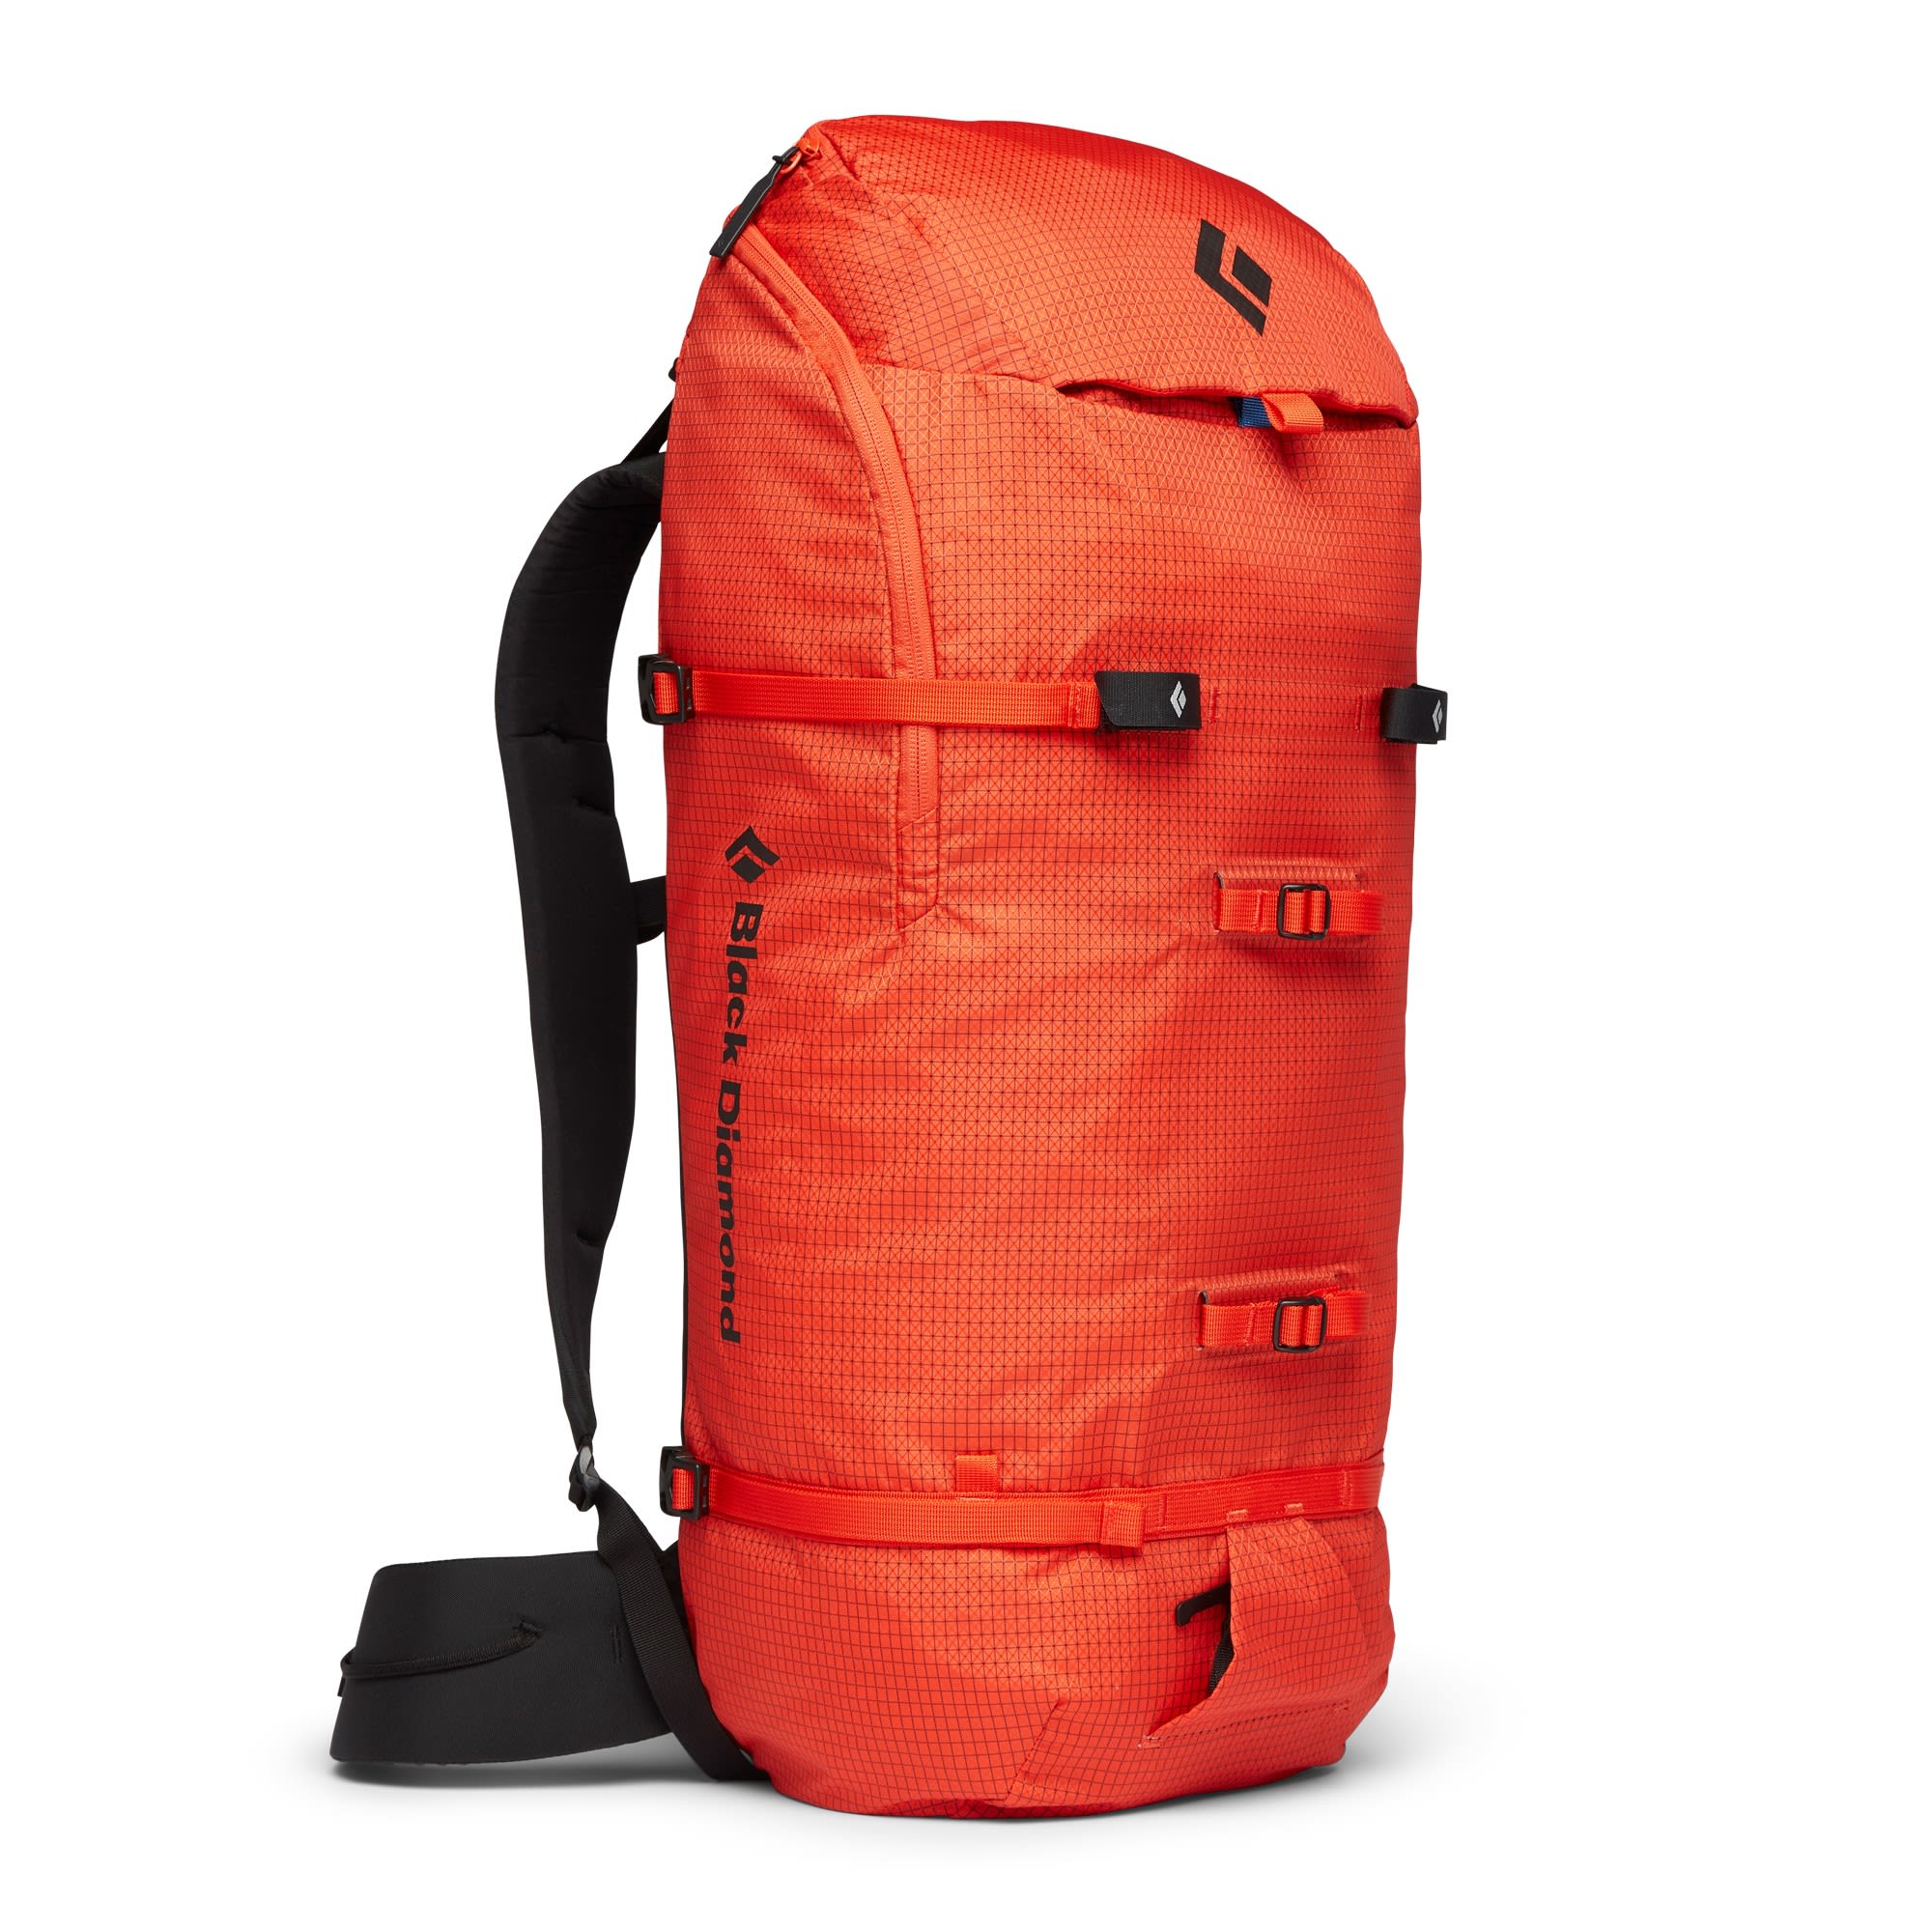 Black Diamond Speed Zip 33 Pack Orange | Größe M-L |  Alpin- & Trekkingrucksac